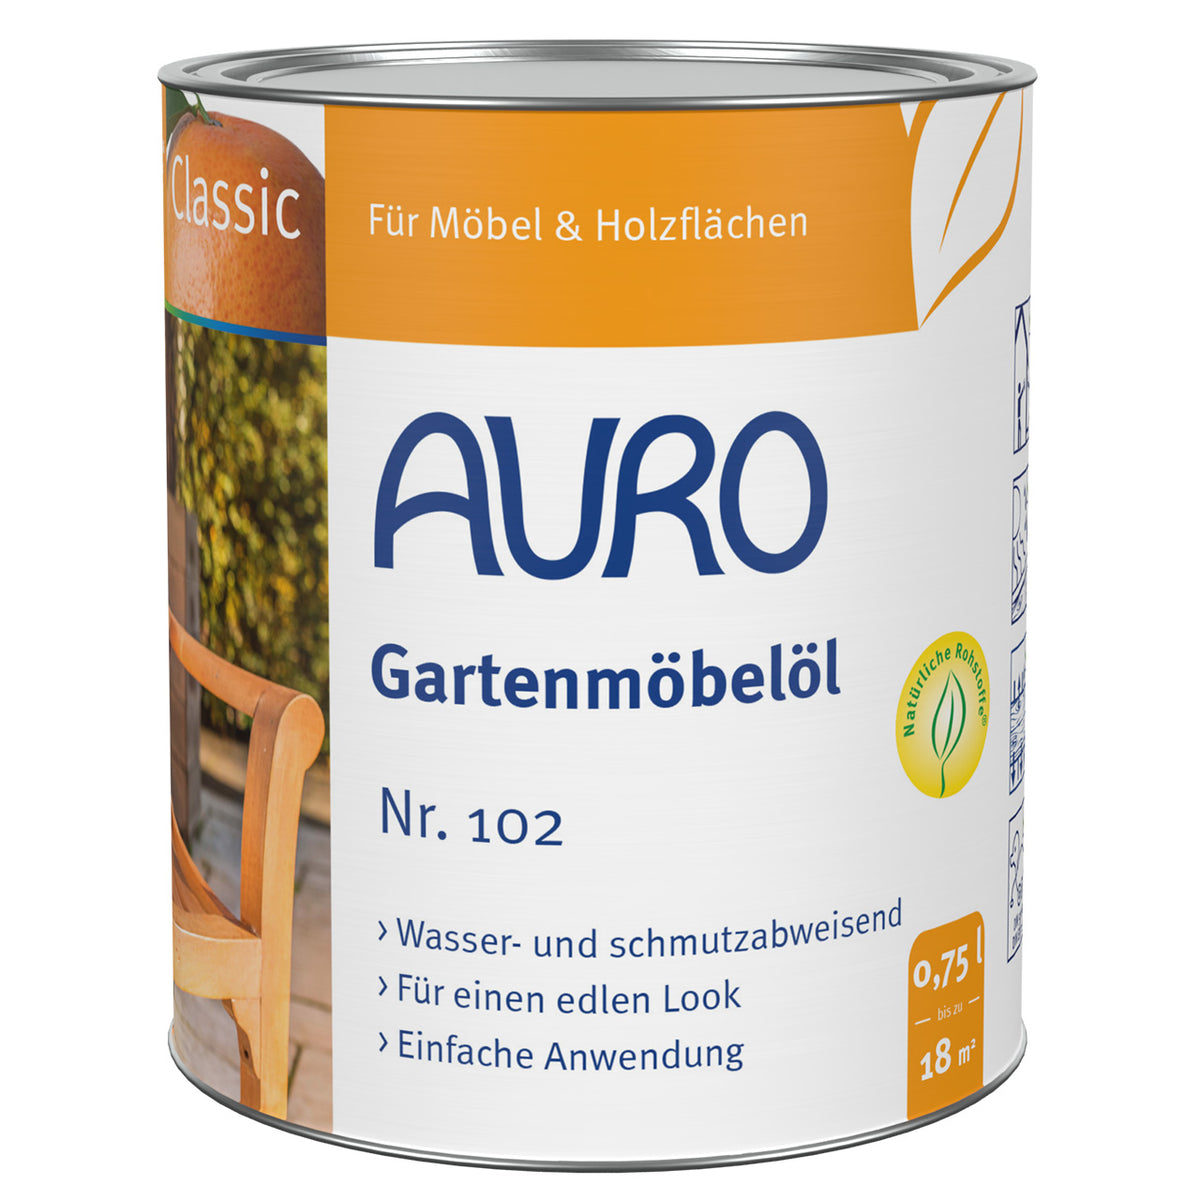 AURO Gartenmöbelöl Classic Nr. 102 _ Natur